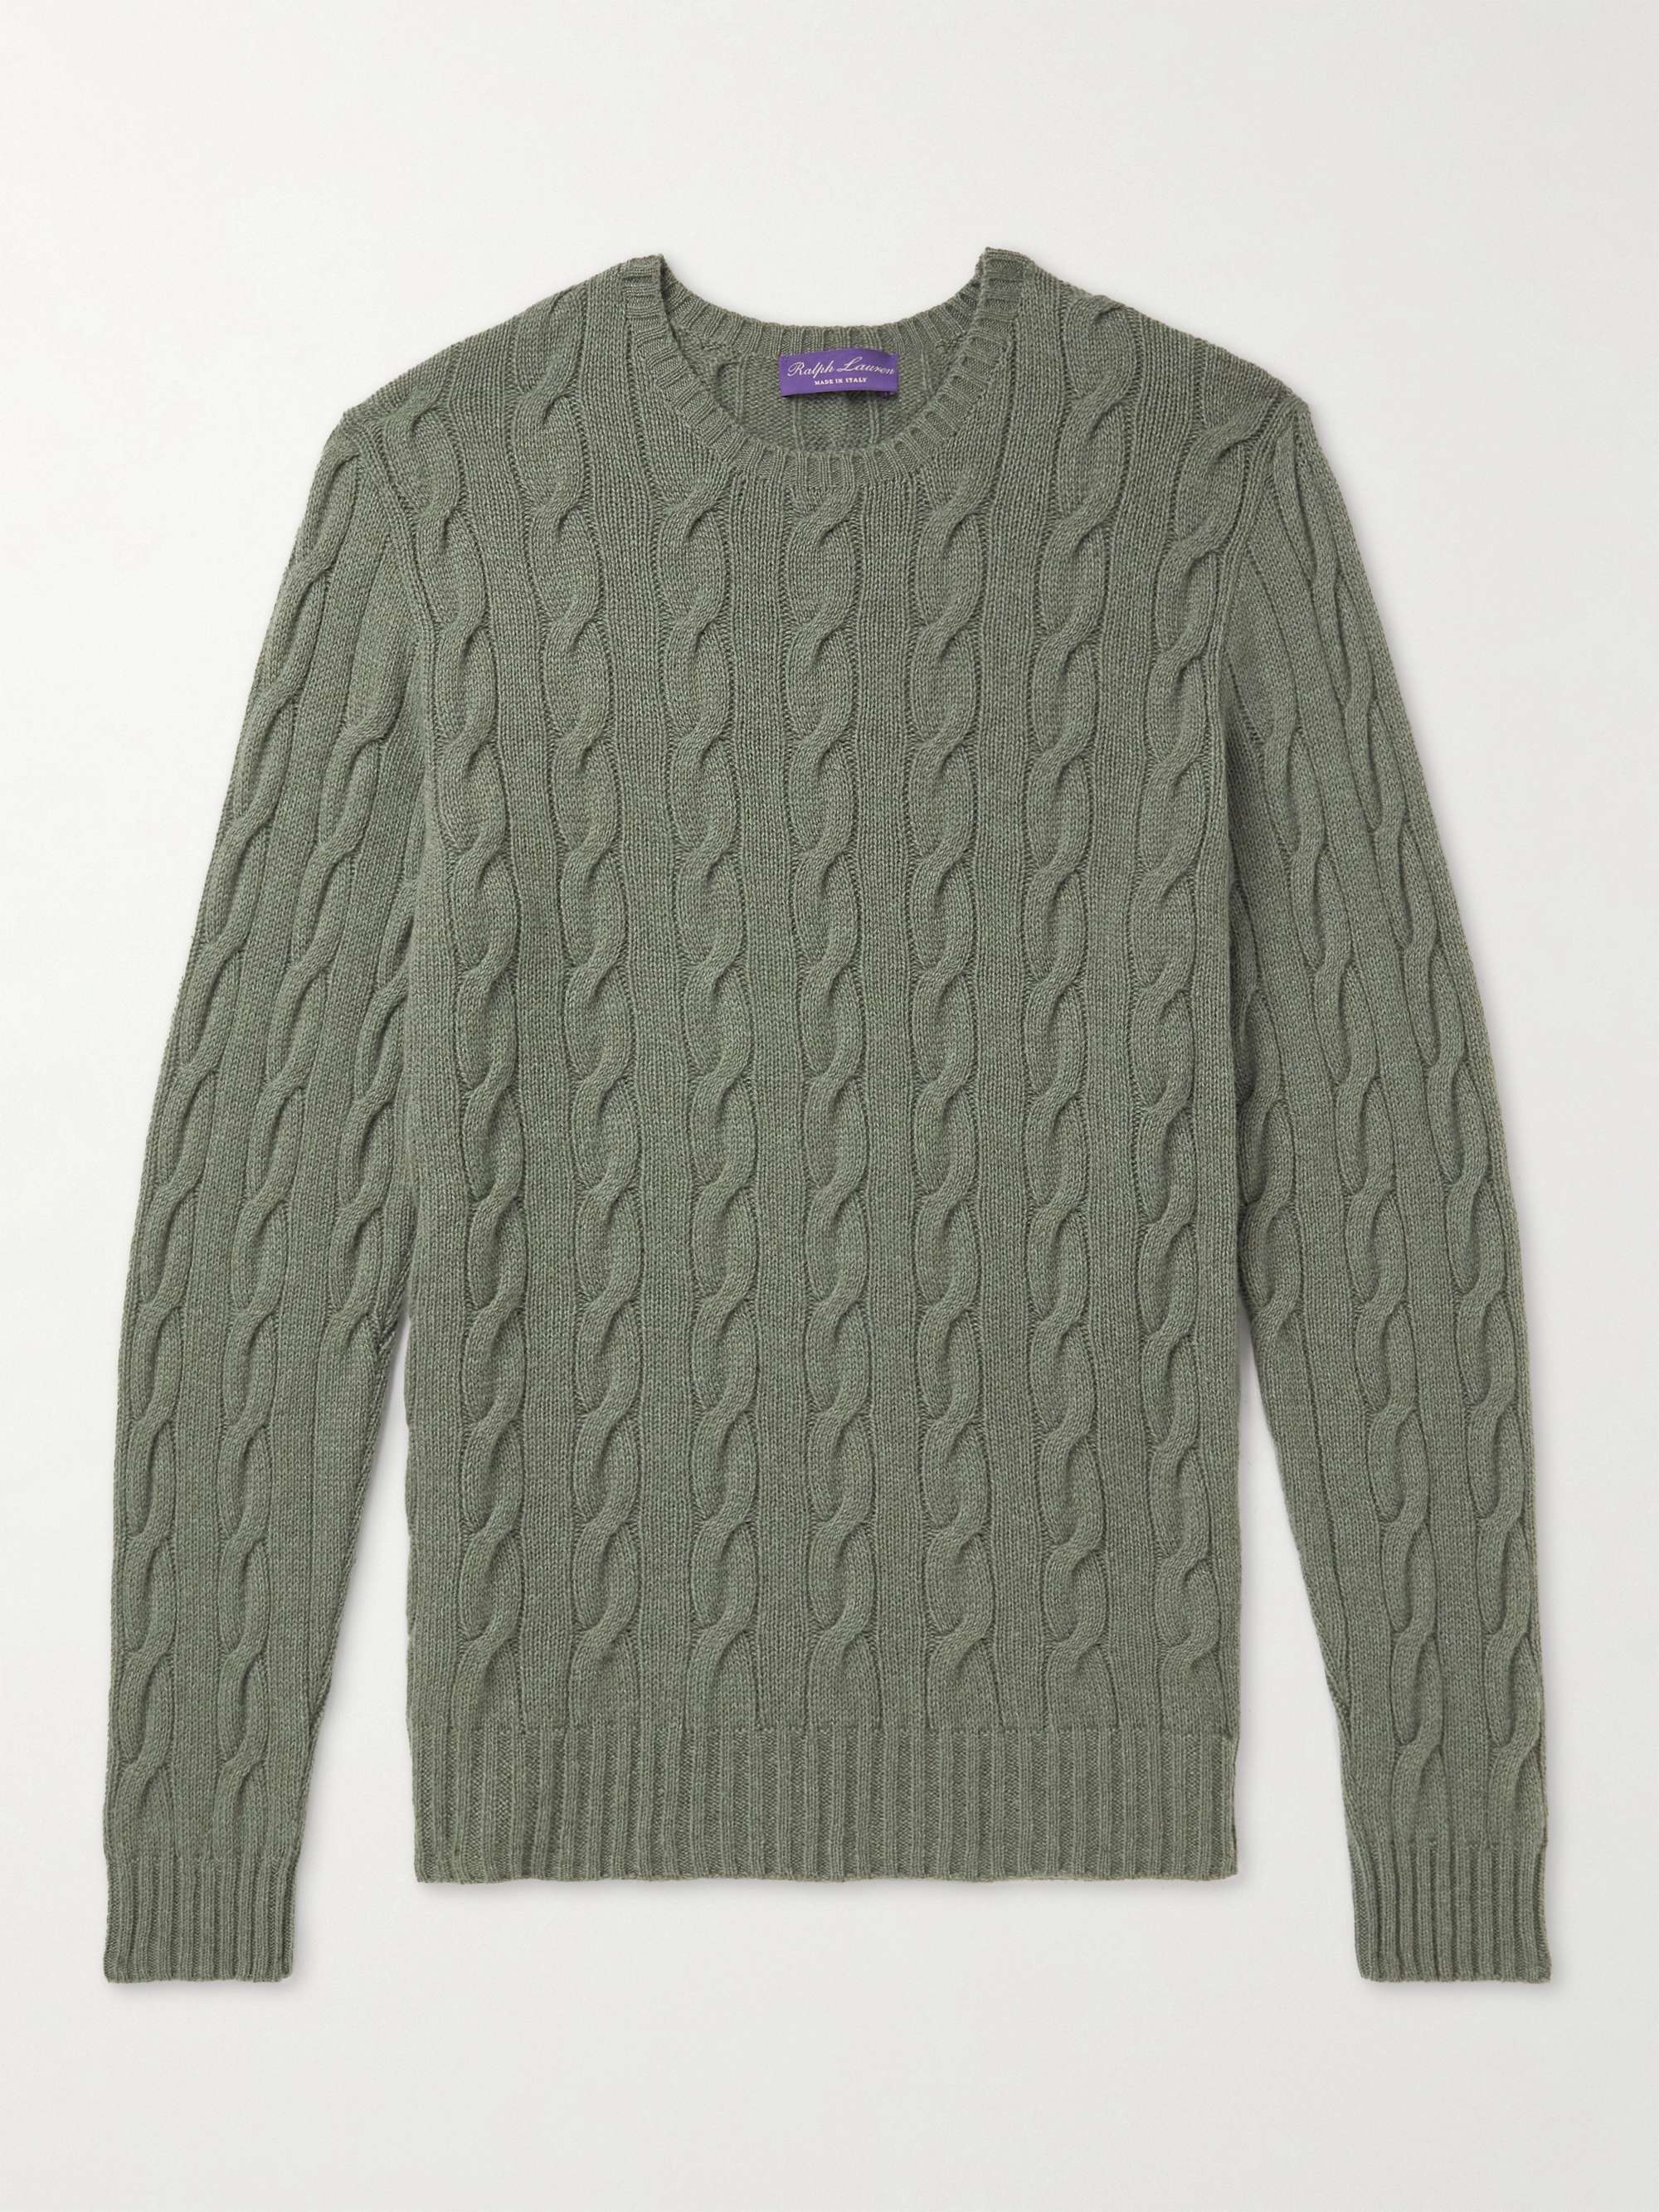 RALPH LAUREN PURPLE LABEL Cable-Knit Cashmere Sweater | MR PORTER